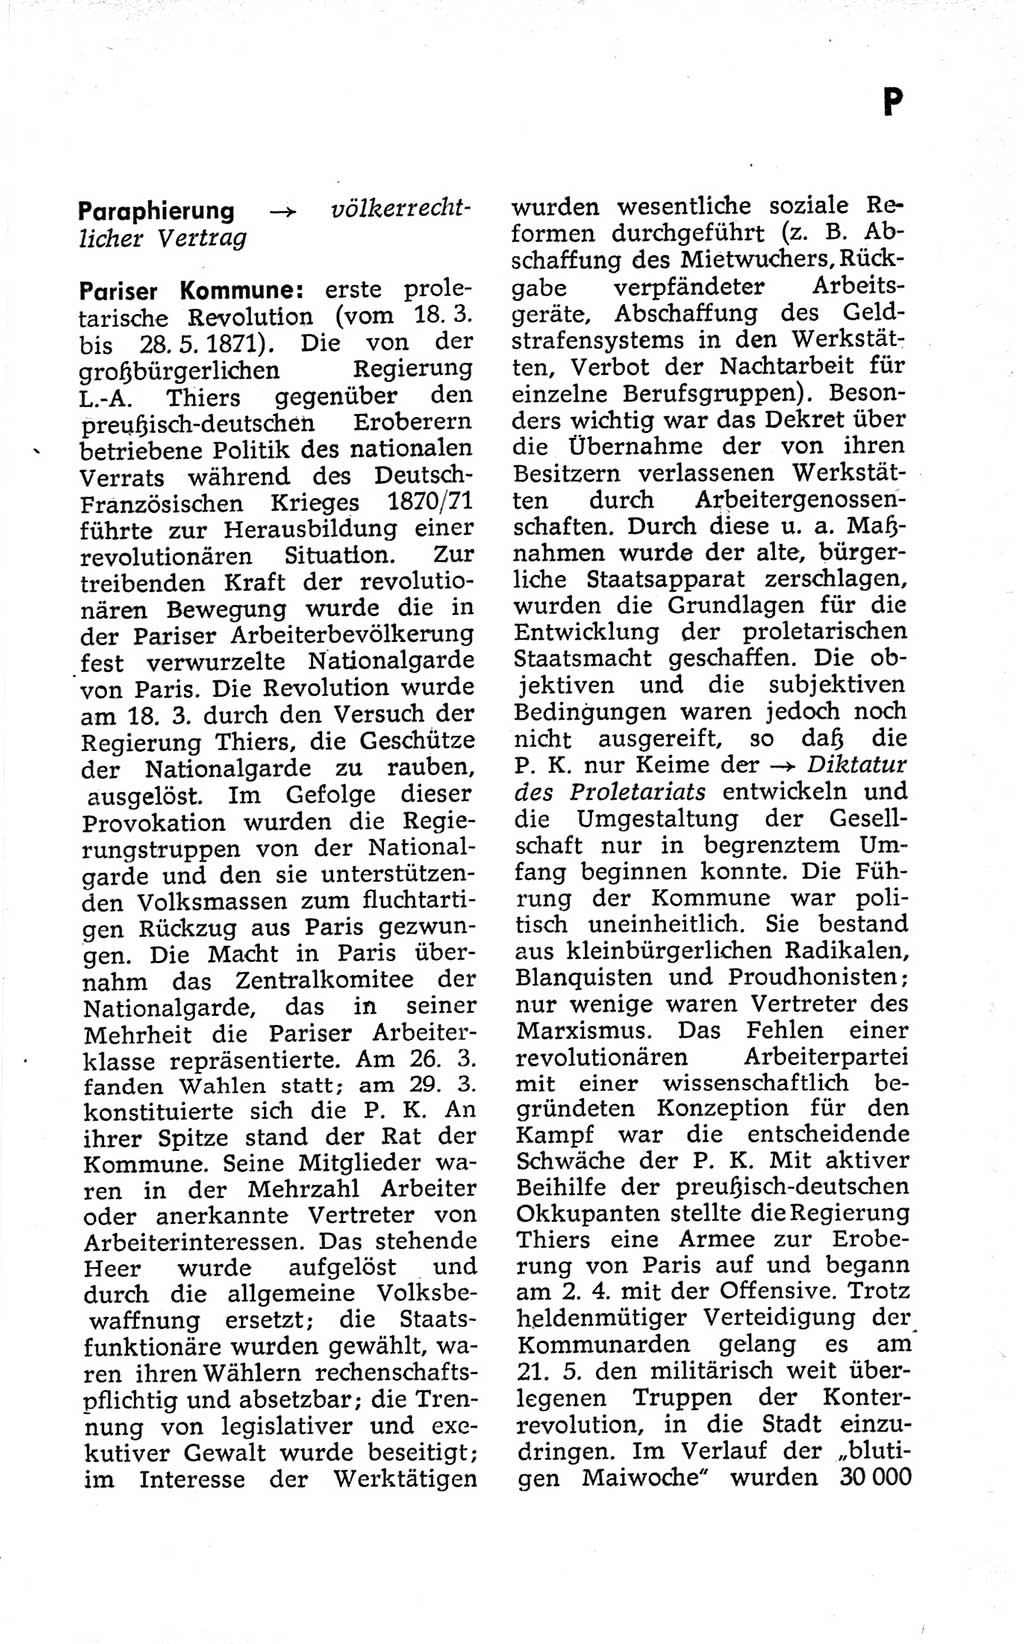 Kleines politisches Wörterbuch [Deutsche Demokratische Republik (DDR)] 1973, Seite 633 (Kl. pol. Wb. DDR 1973, S. 633)